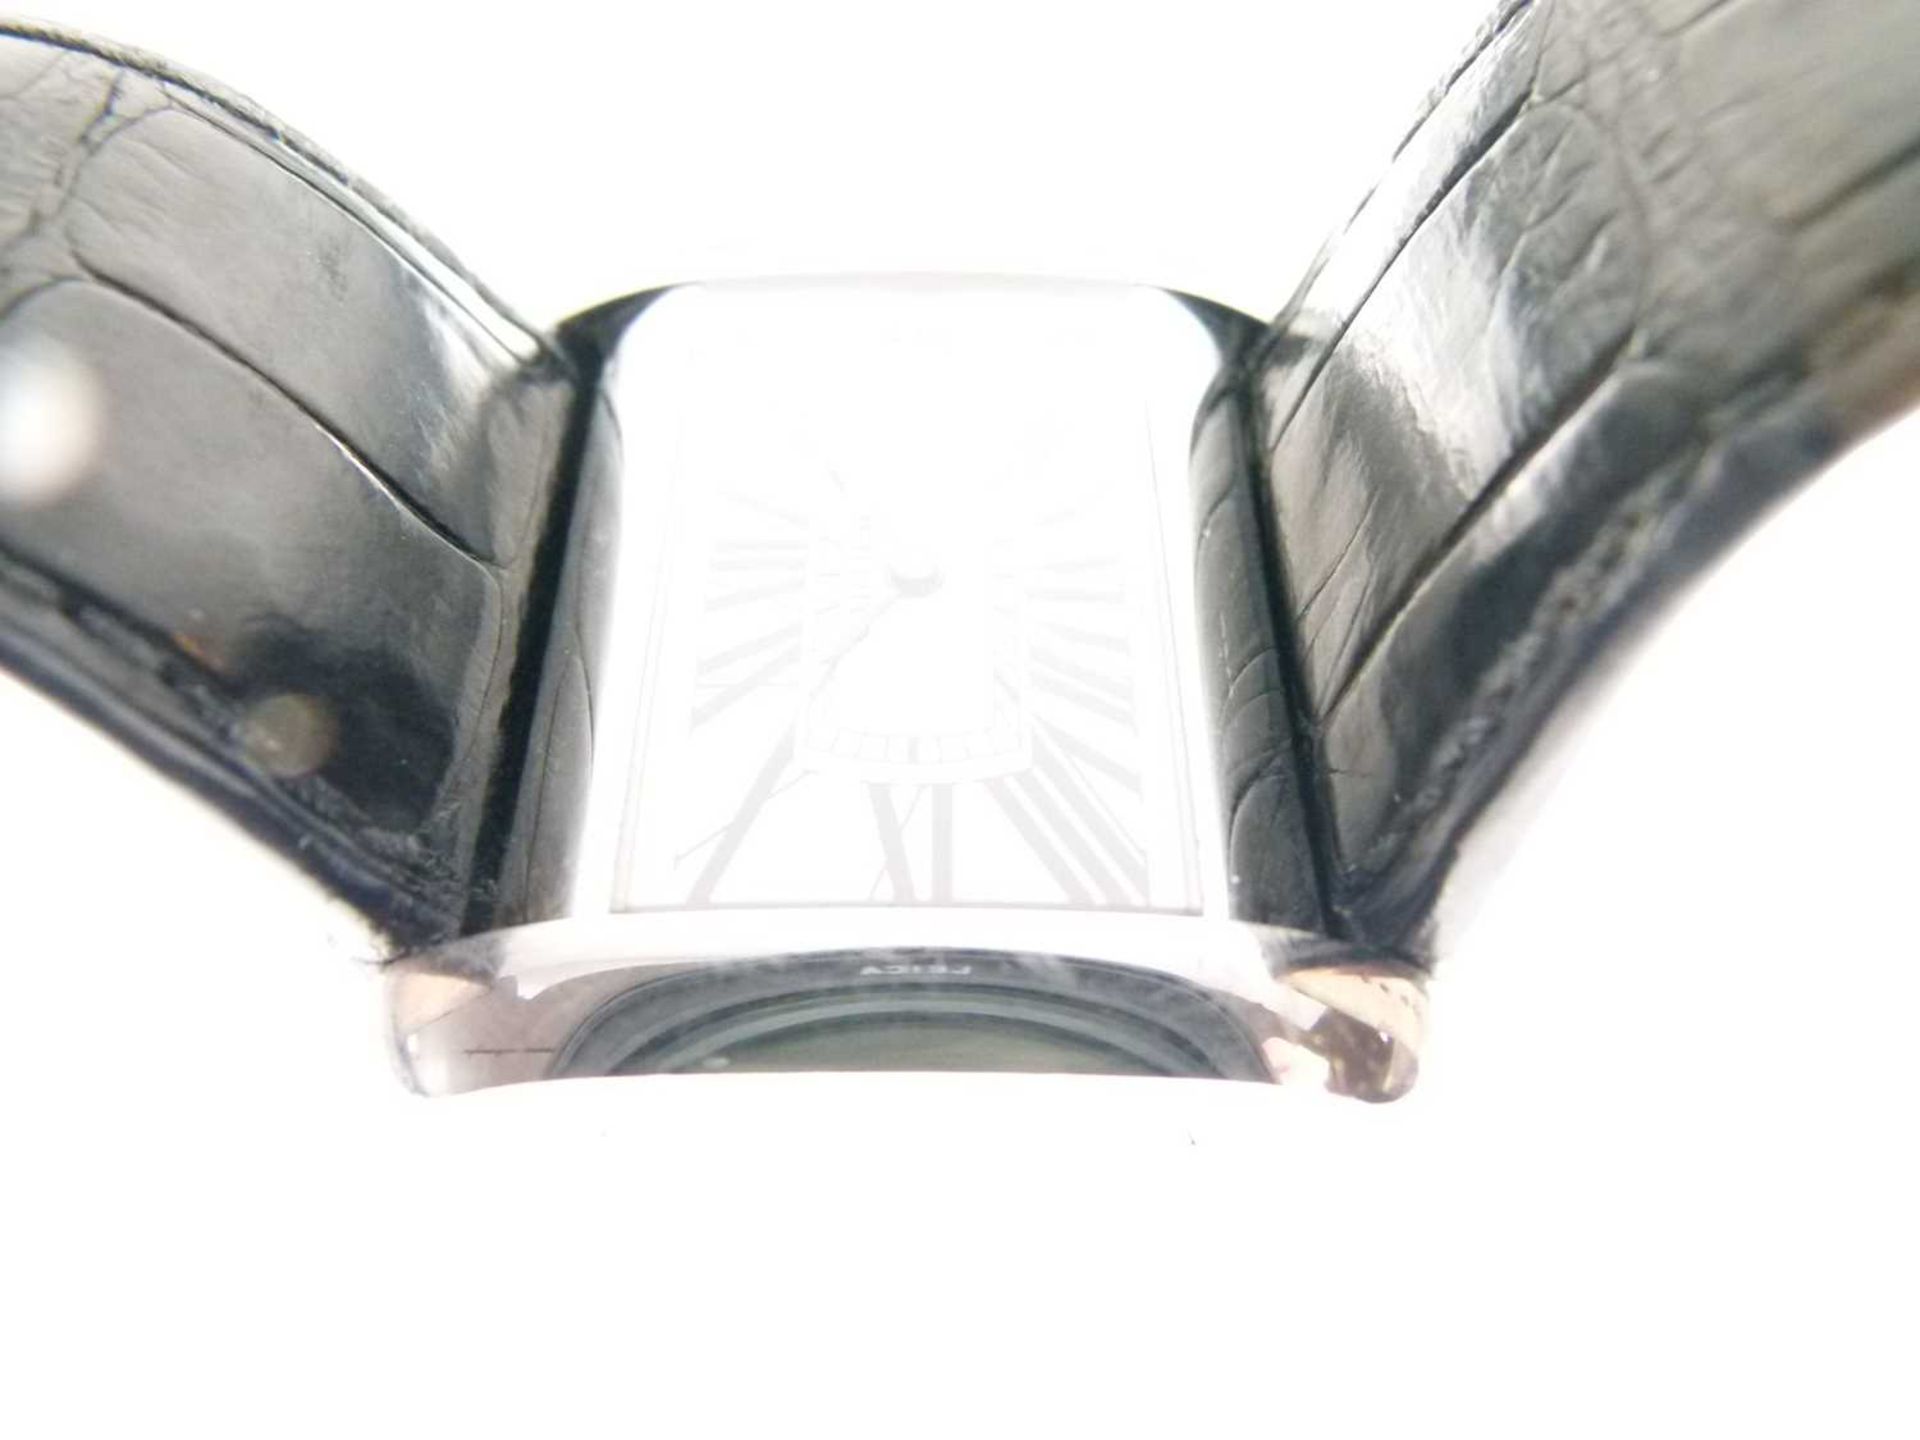 Cartier - Gentleman's Tank Divan stainless steel cased wristwatch - Image 3 of 8